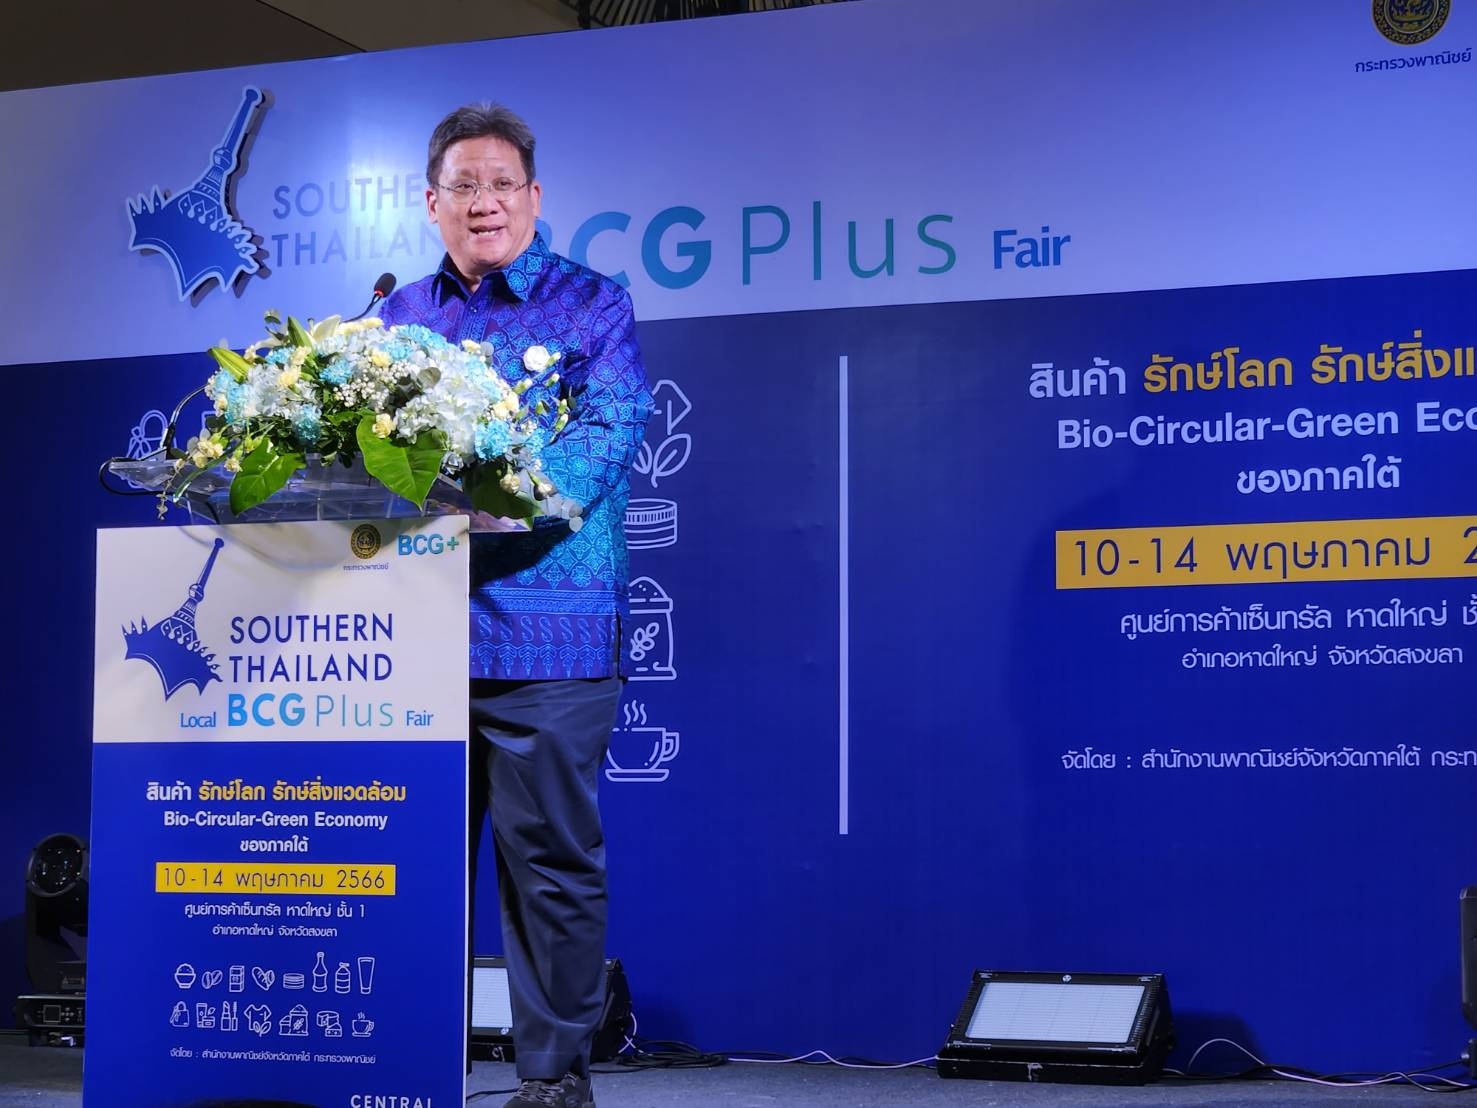 หอการค้าจังหวัดสงขลา ร่วมเป็นเกียรติพิธีงาน “Southern Thailand Local BCG Plus Fair”